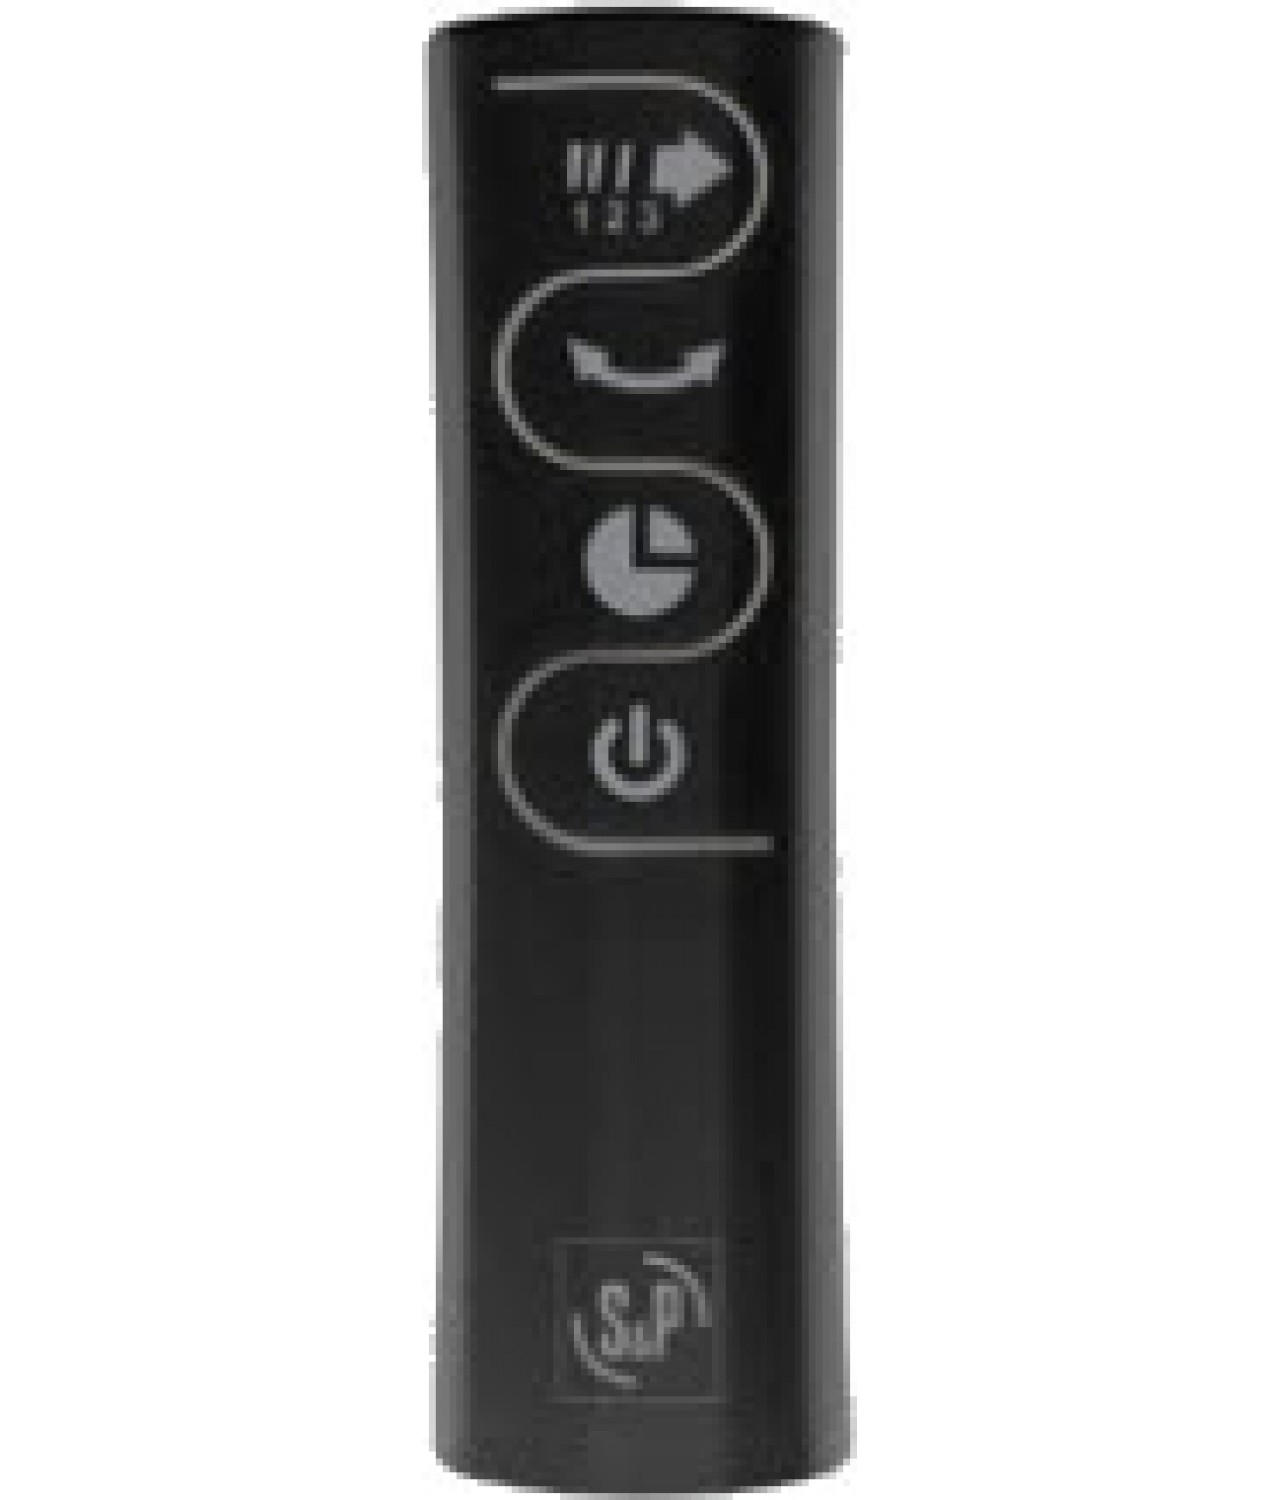 ARTIC-405 CN TC fan remote control - included